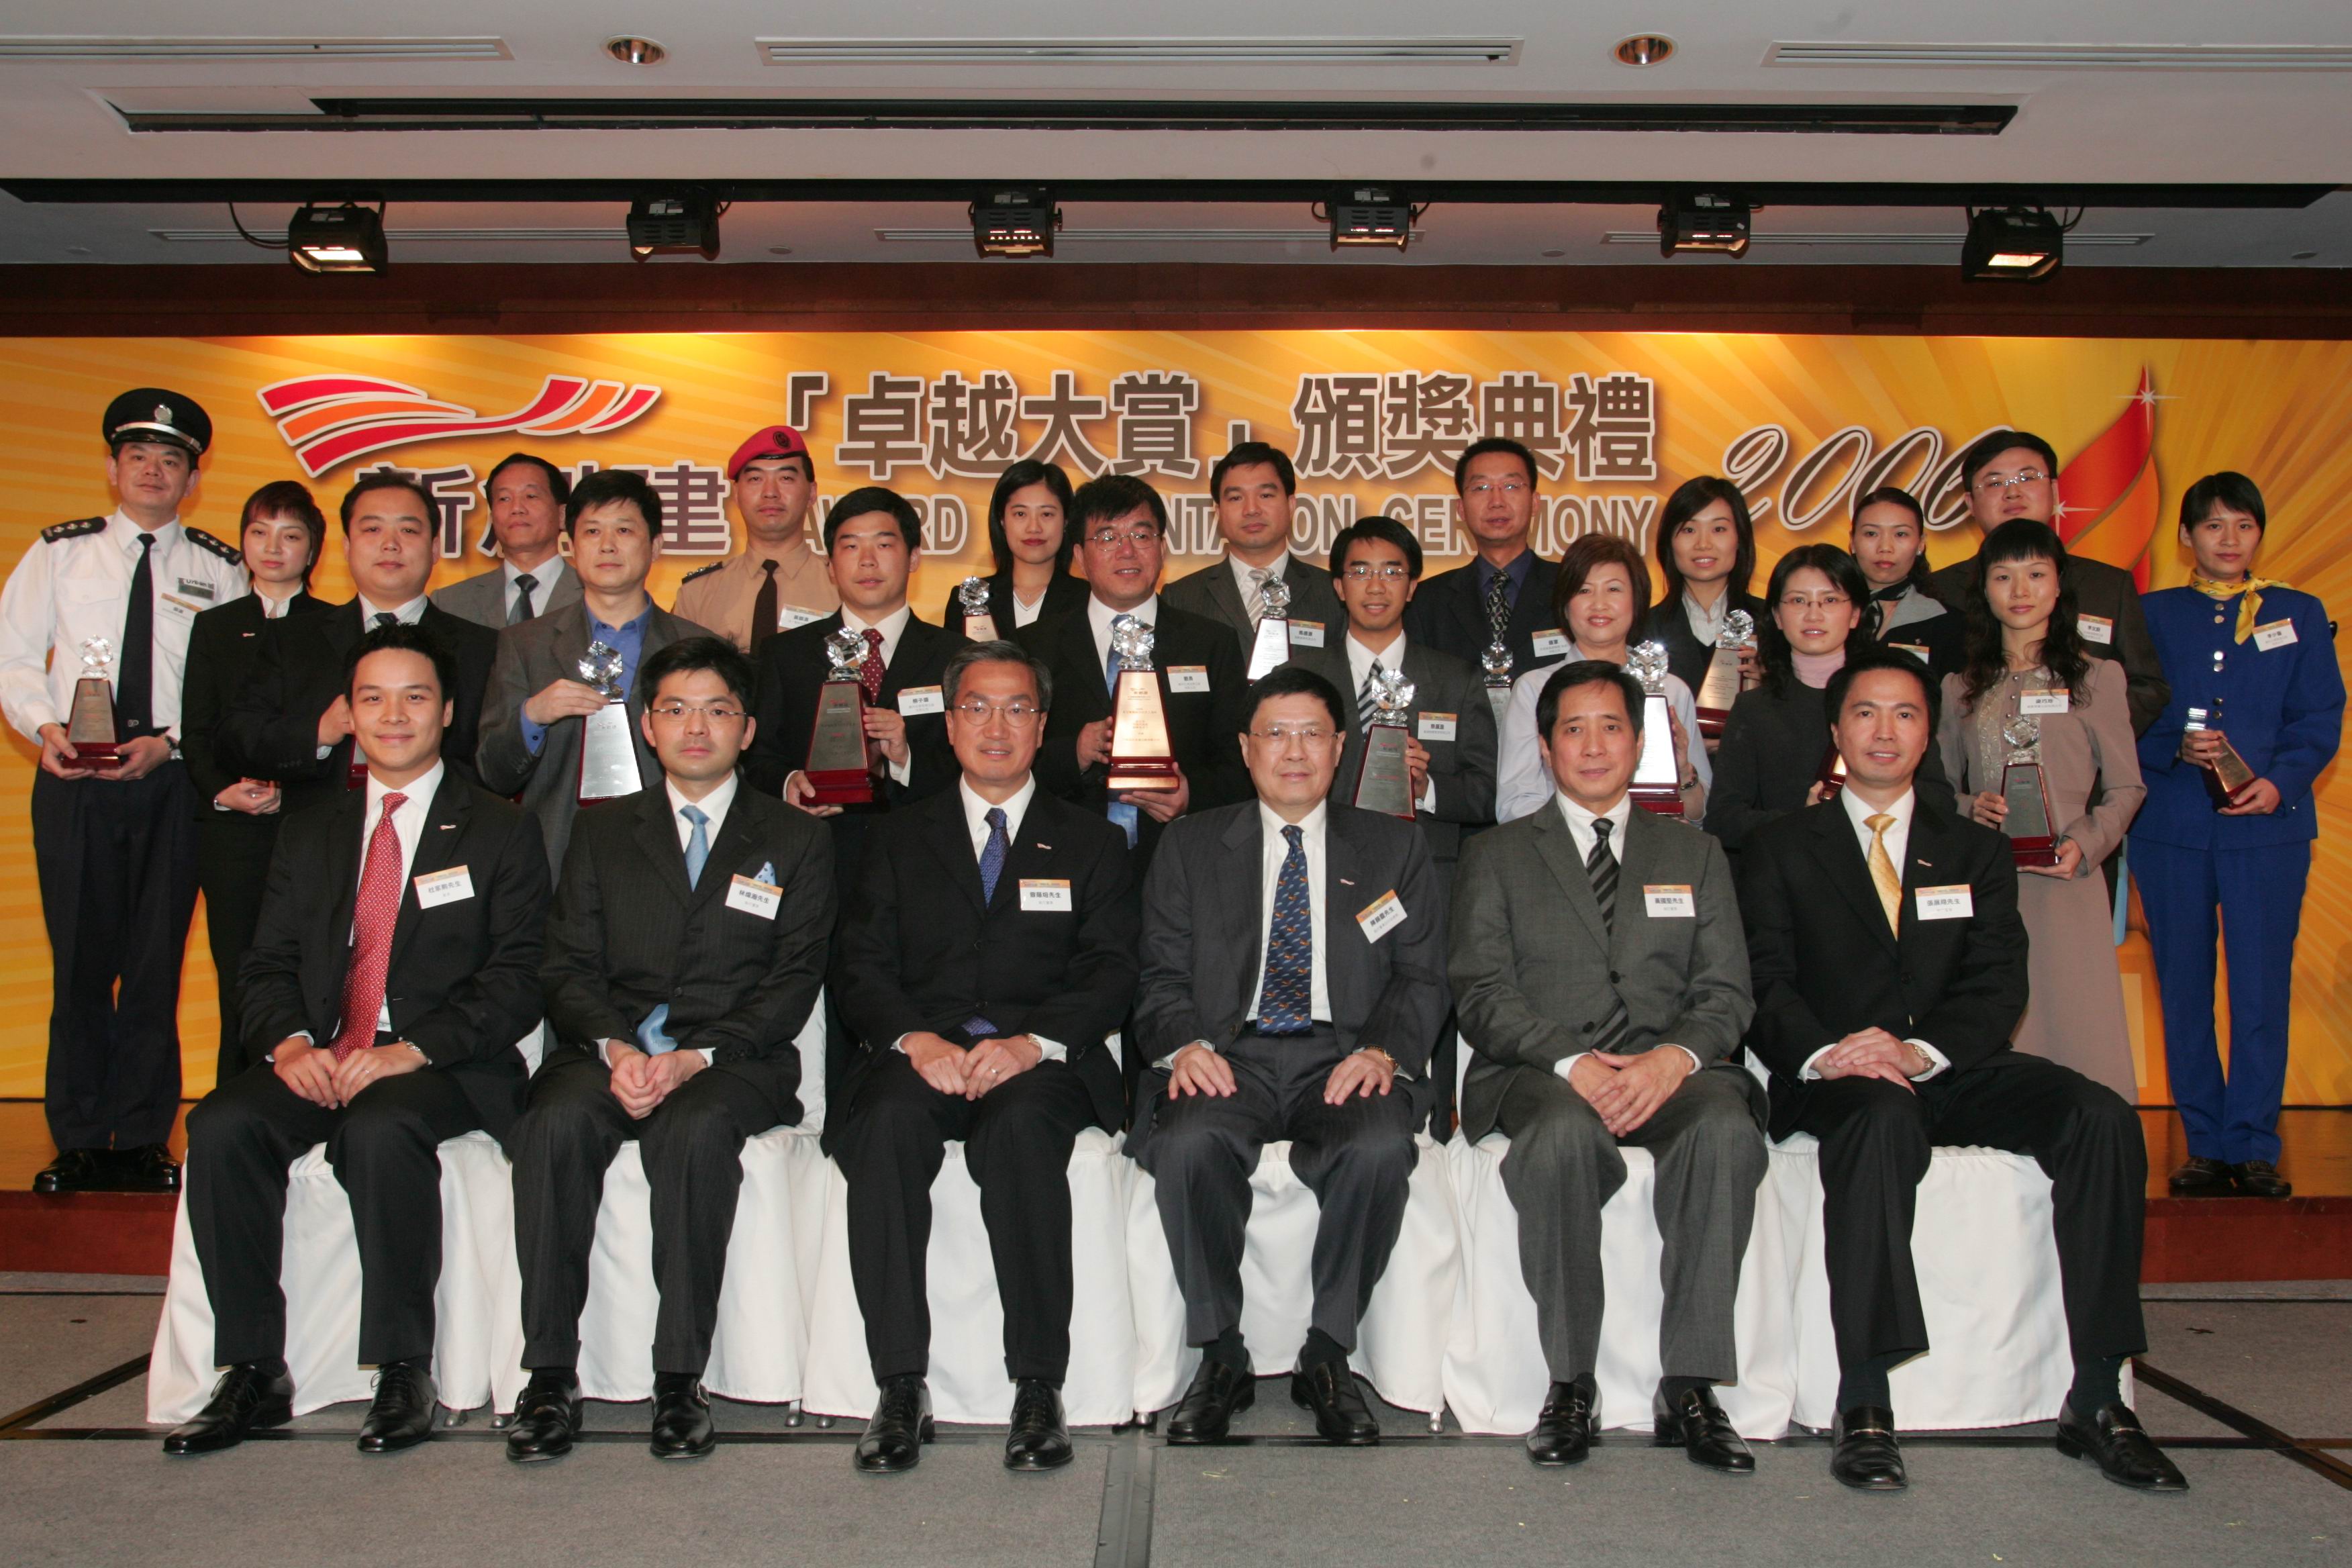 新创建集团「卓越大赏」颁奖典礼2006	表扬杰出员工